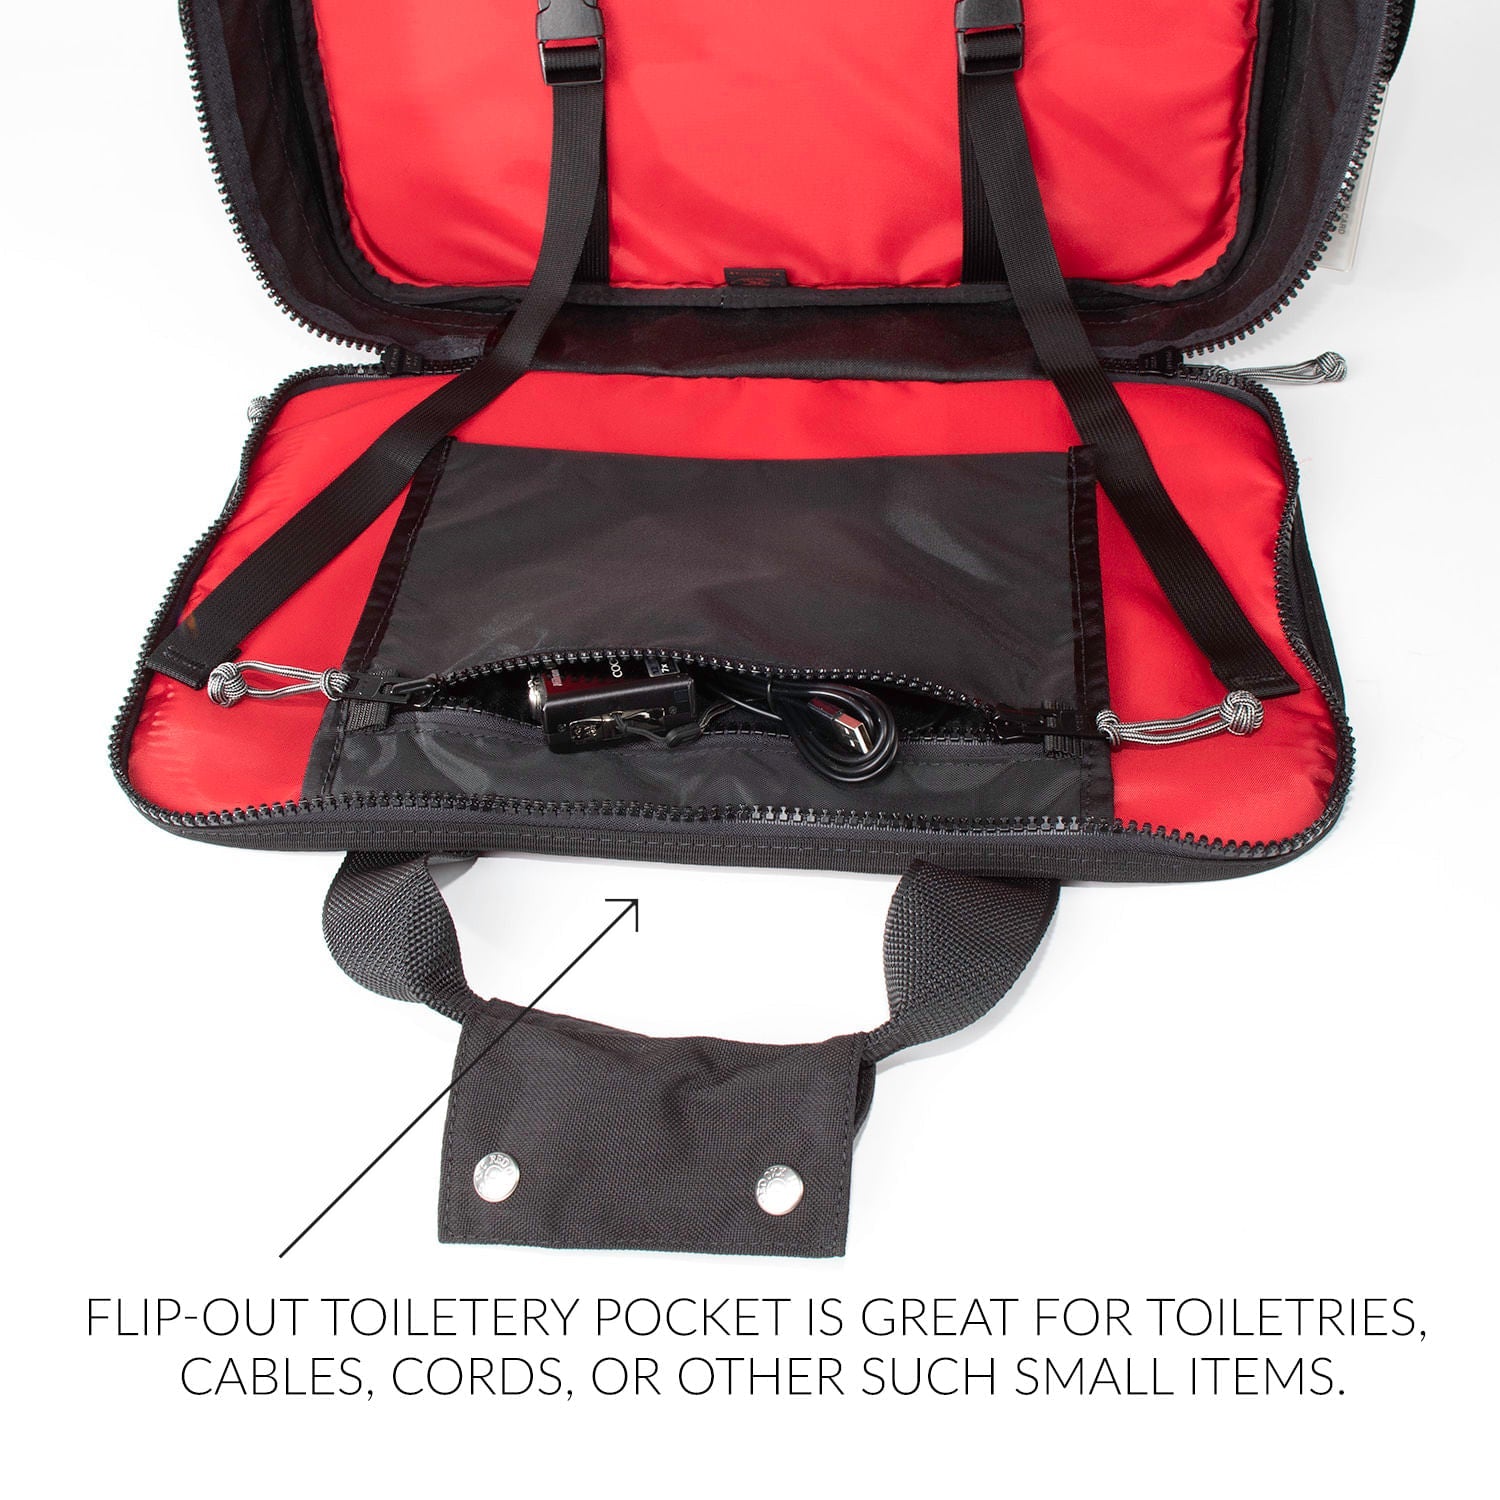 Mini Boss Laptop Travel Bag